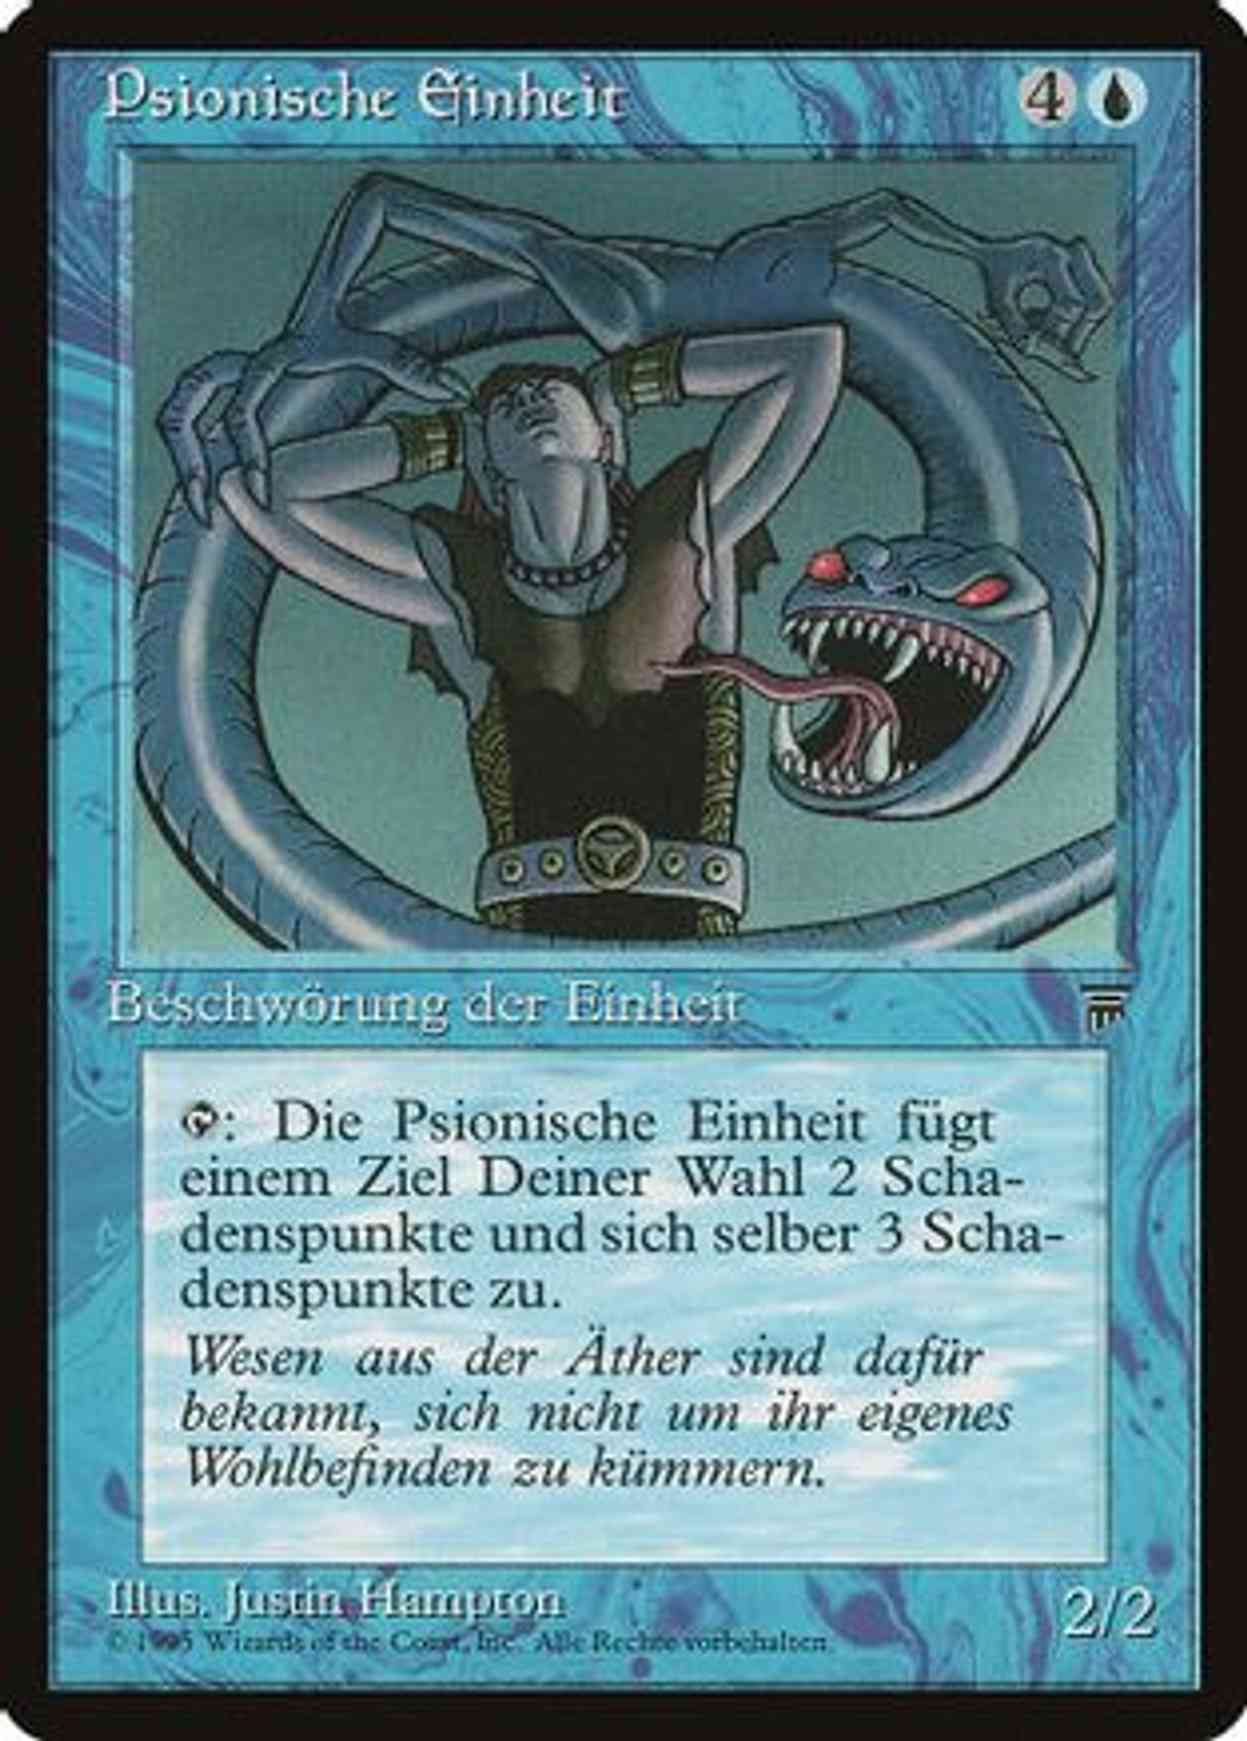 Psionic Entity (German) - "Psionische Einheit" magic card front